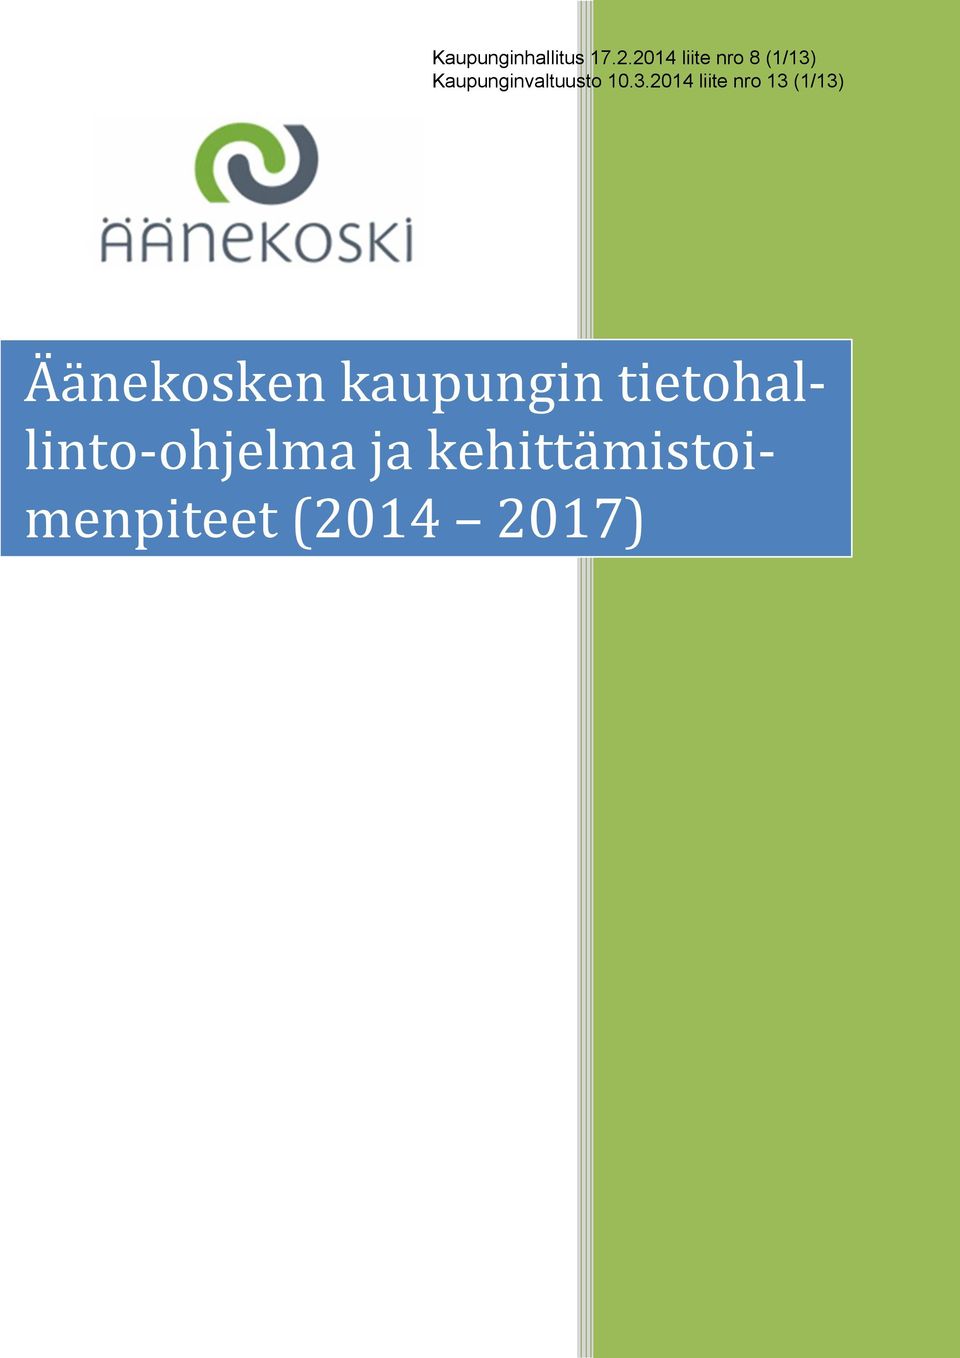 10.3.2014 liite nro 13 (1/13) Äänekosken